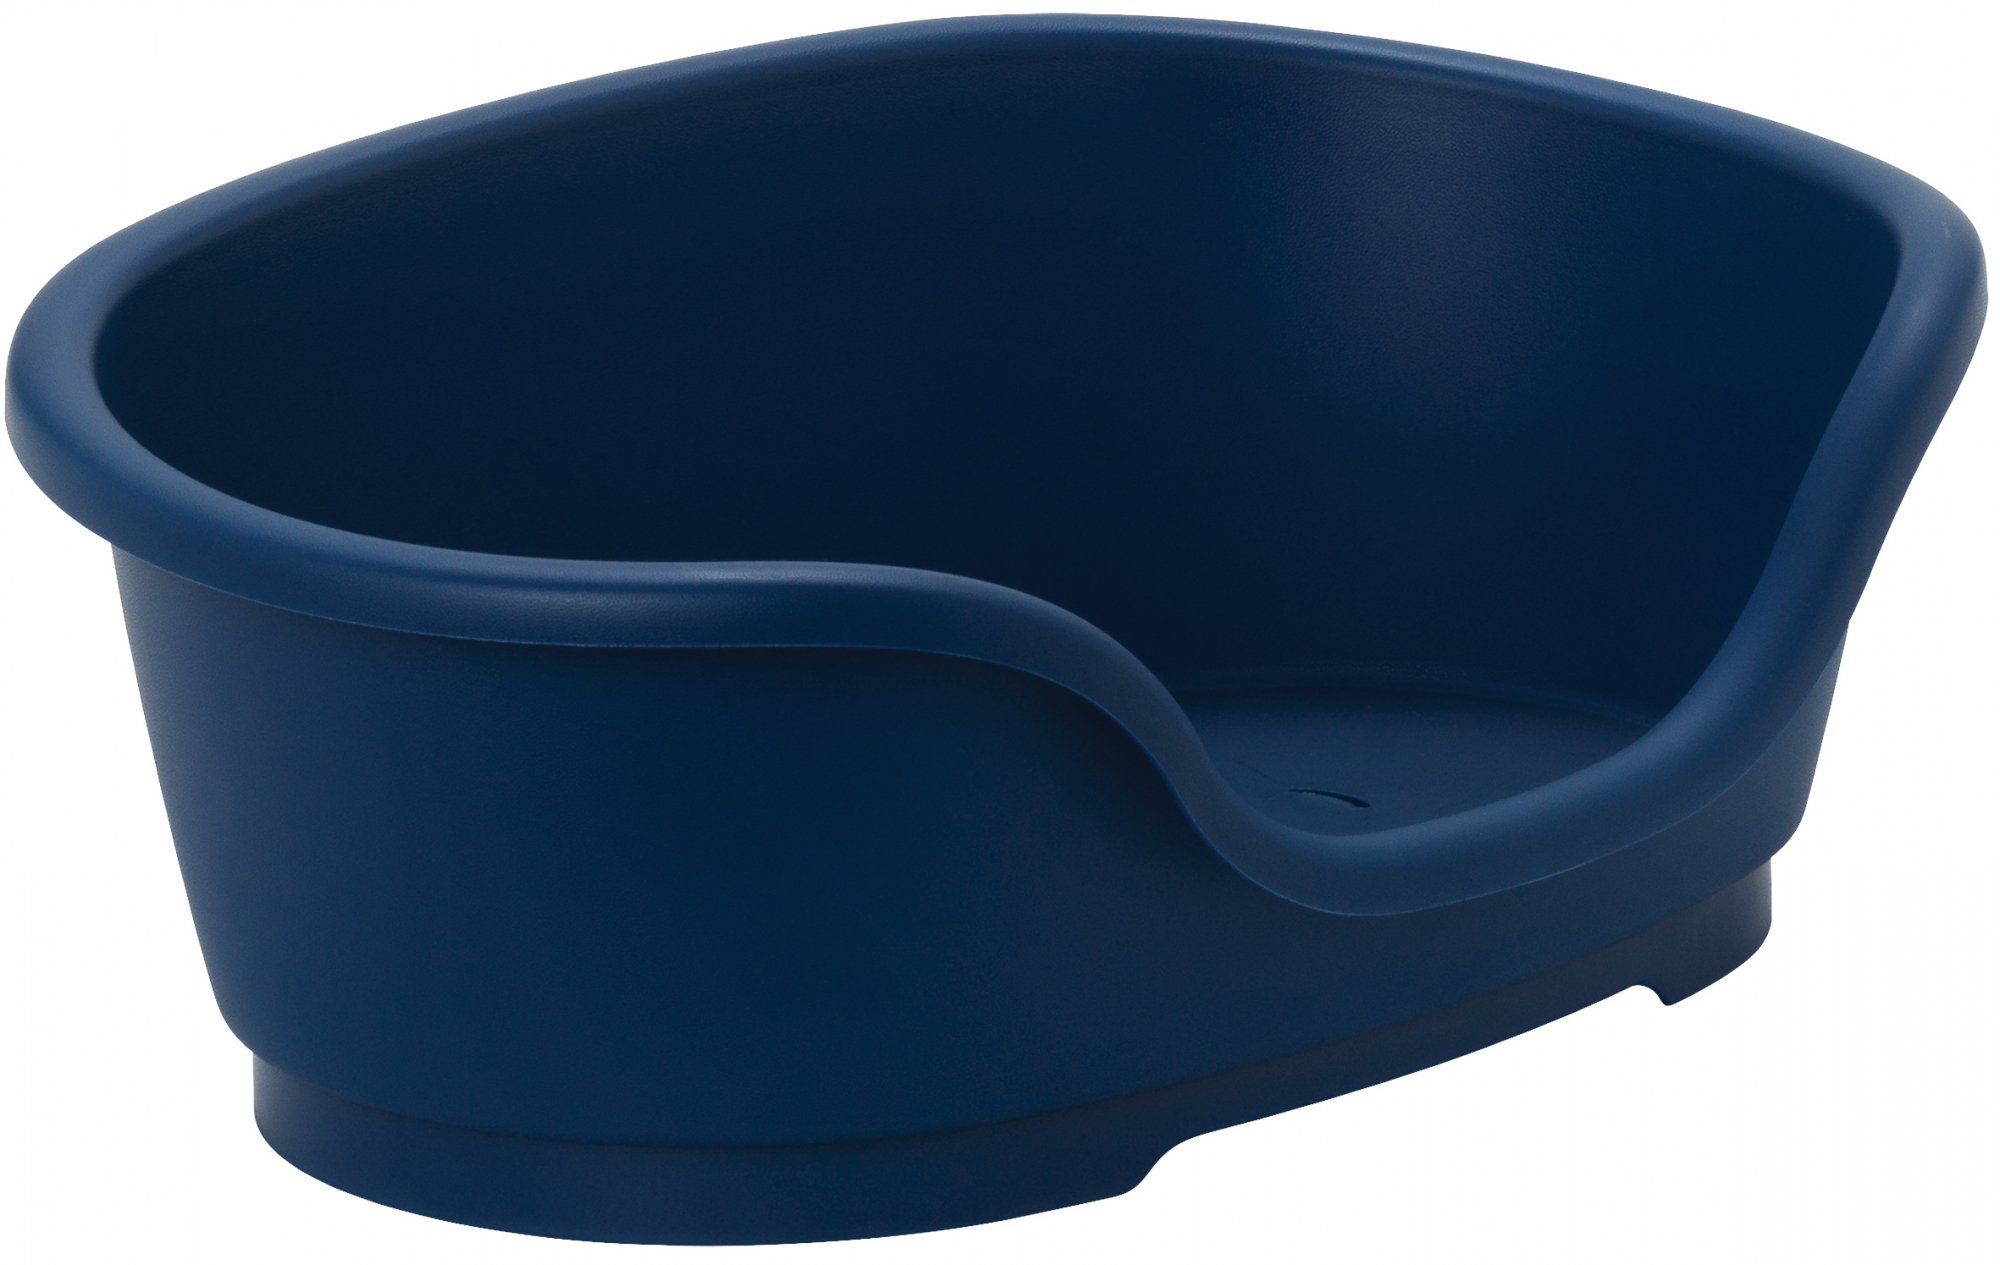 Cesta de plástico Azul Moderna Domus - Varios tamaños disponibles